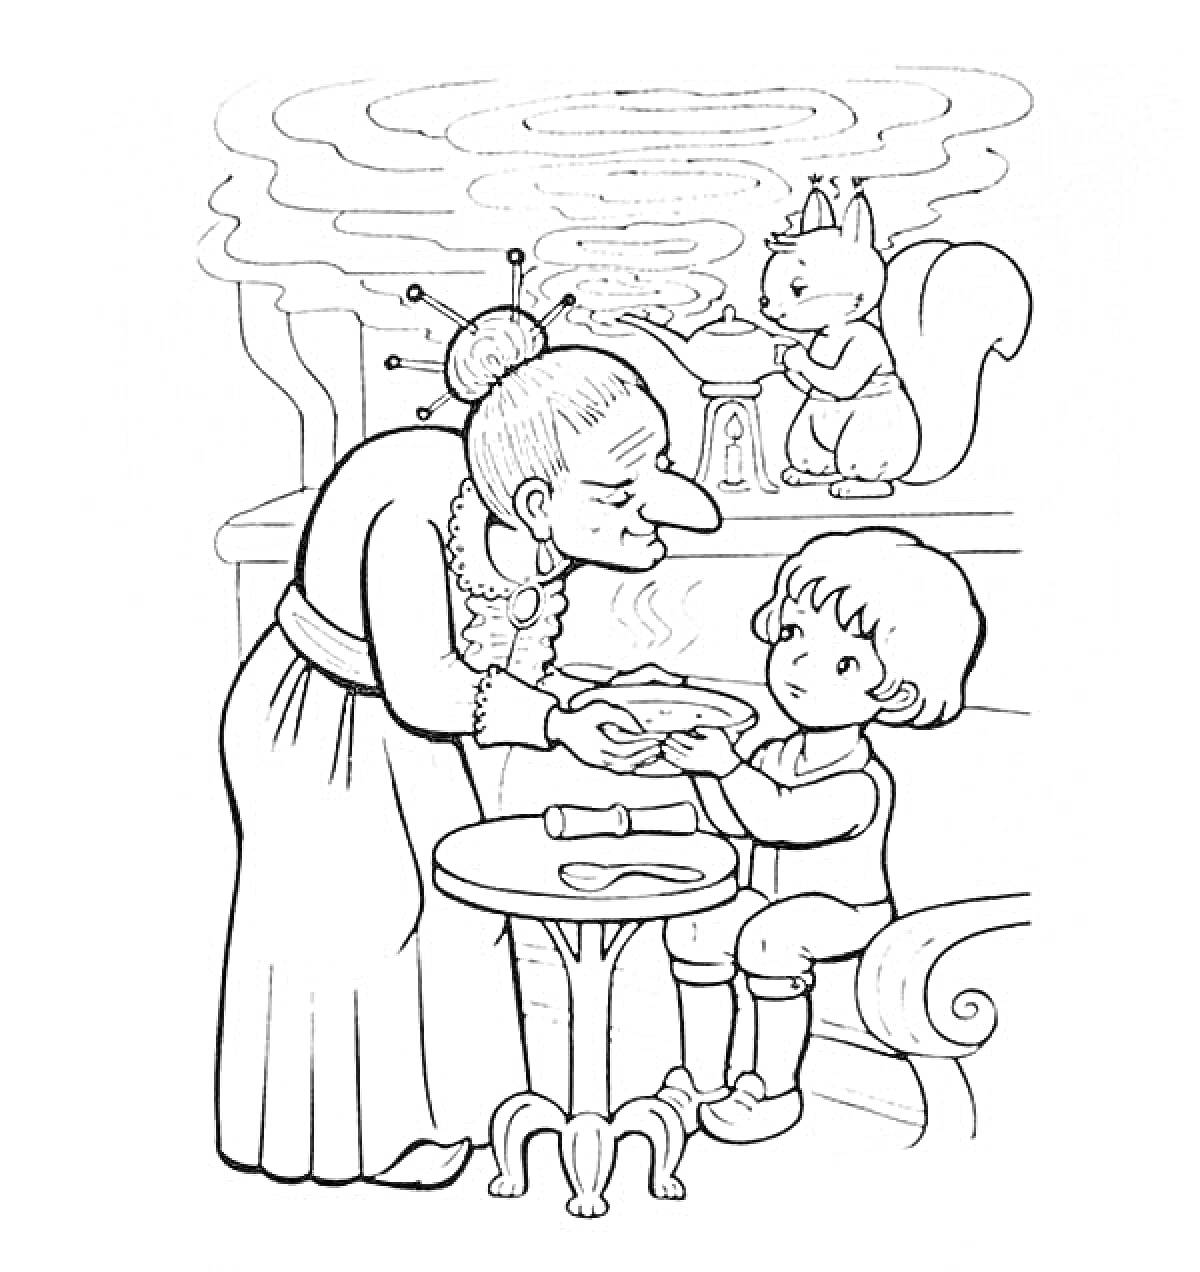 Женщина с тарелкой в руках наклоняется к сидящему мальчику, кот за столом, дым из камина